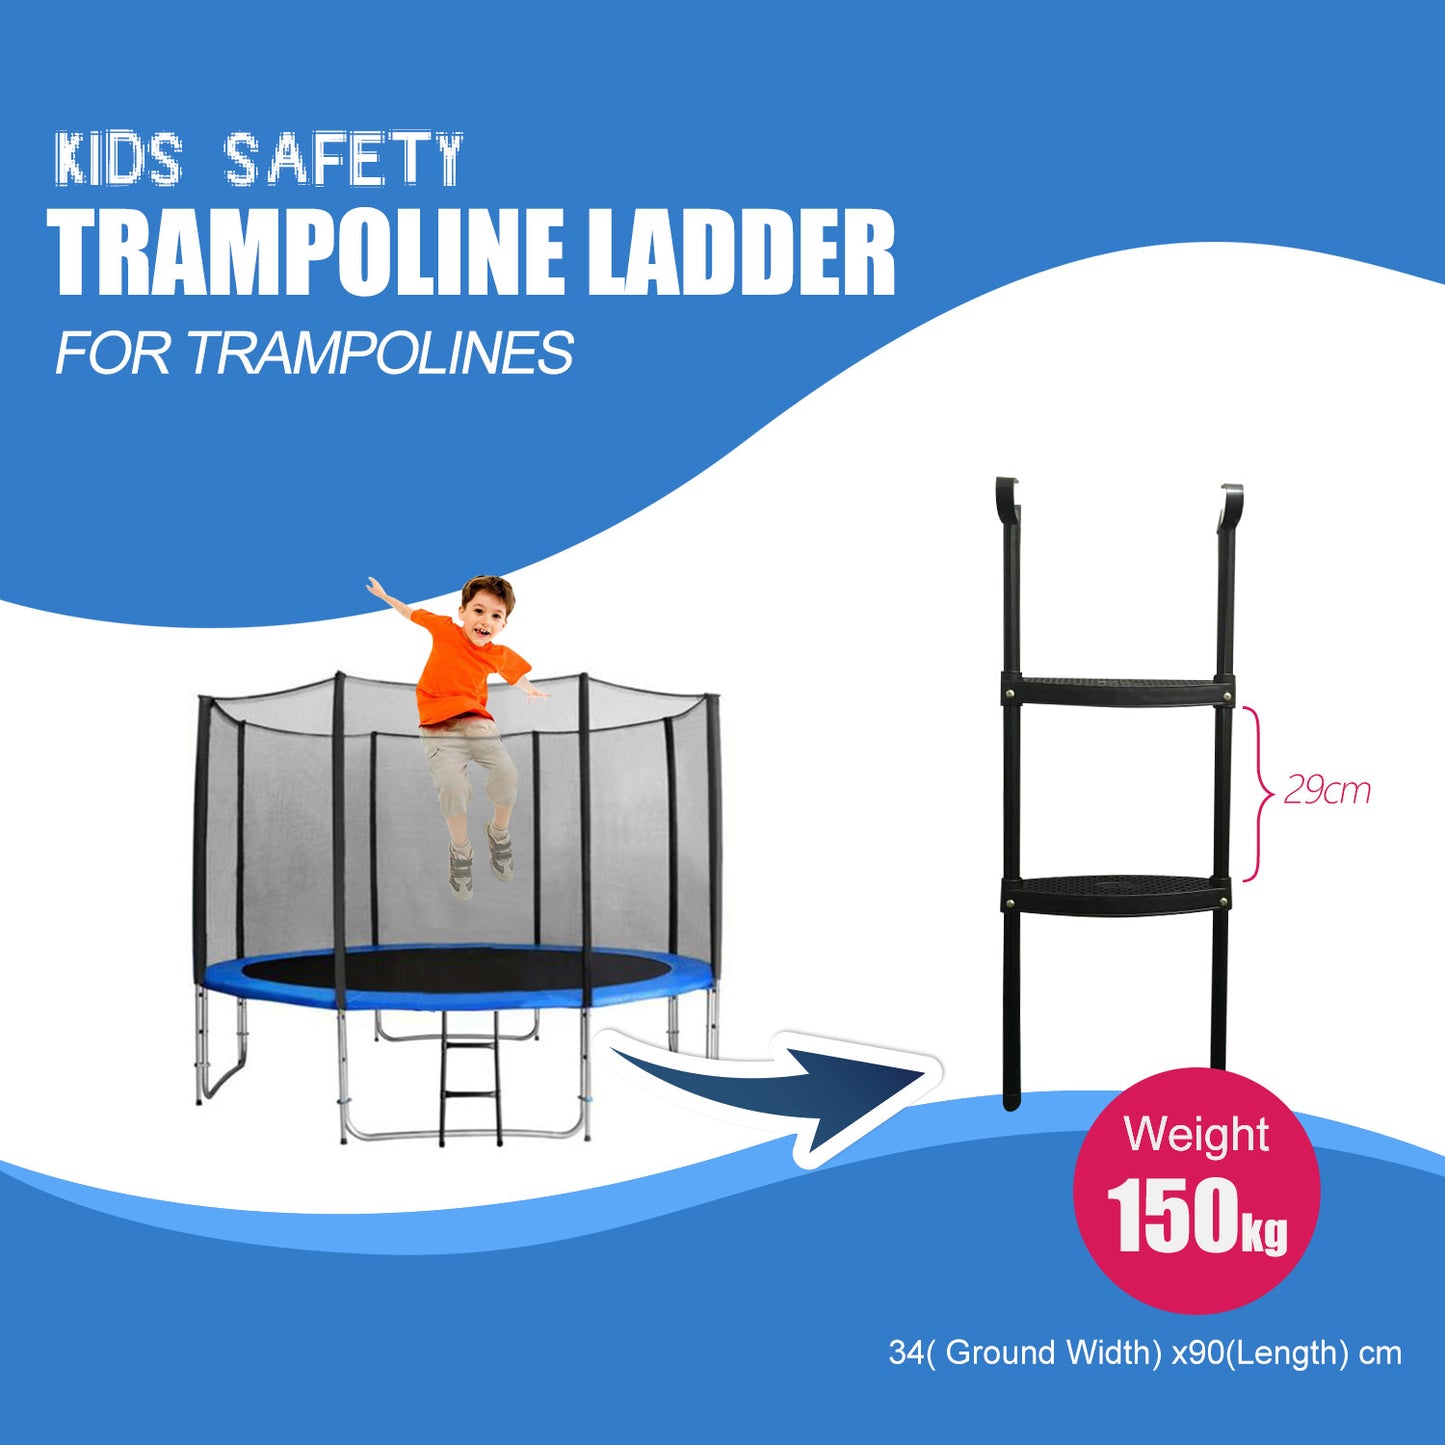 Kids Safety Trampoline Ladder for Trampolines